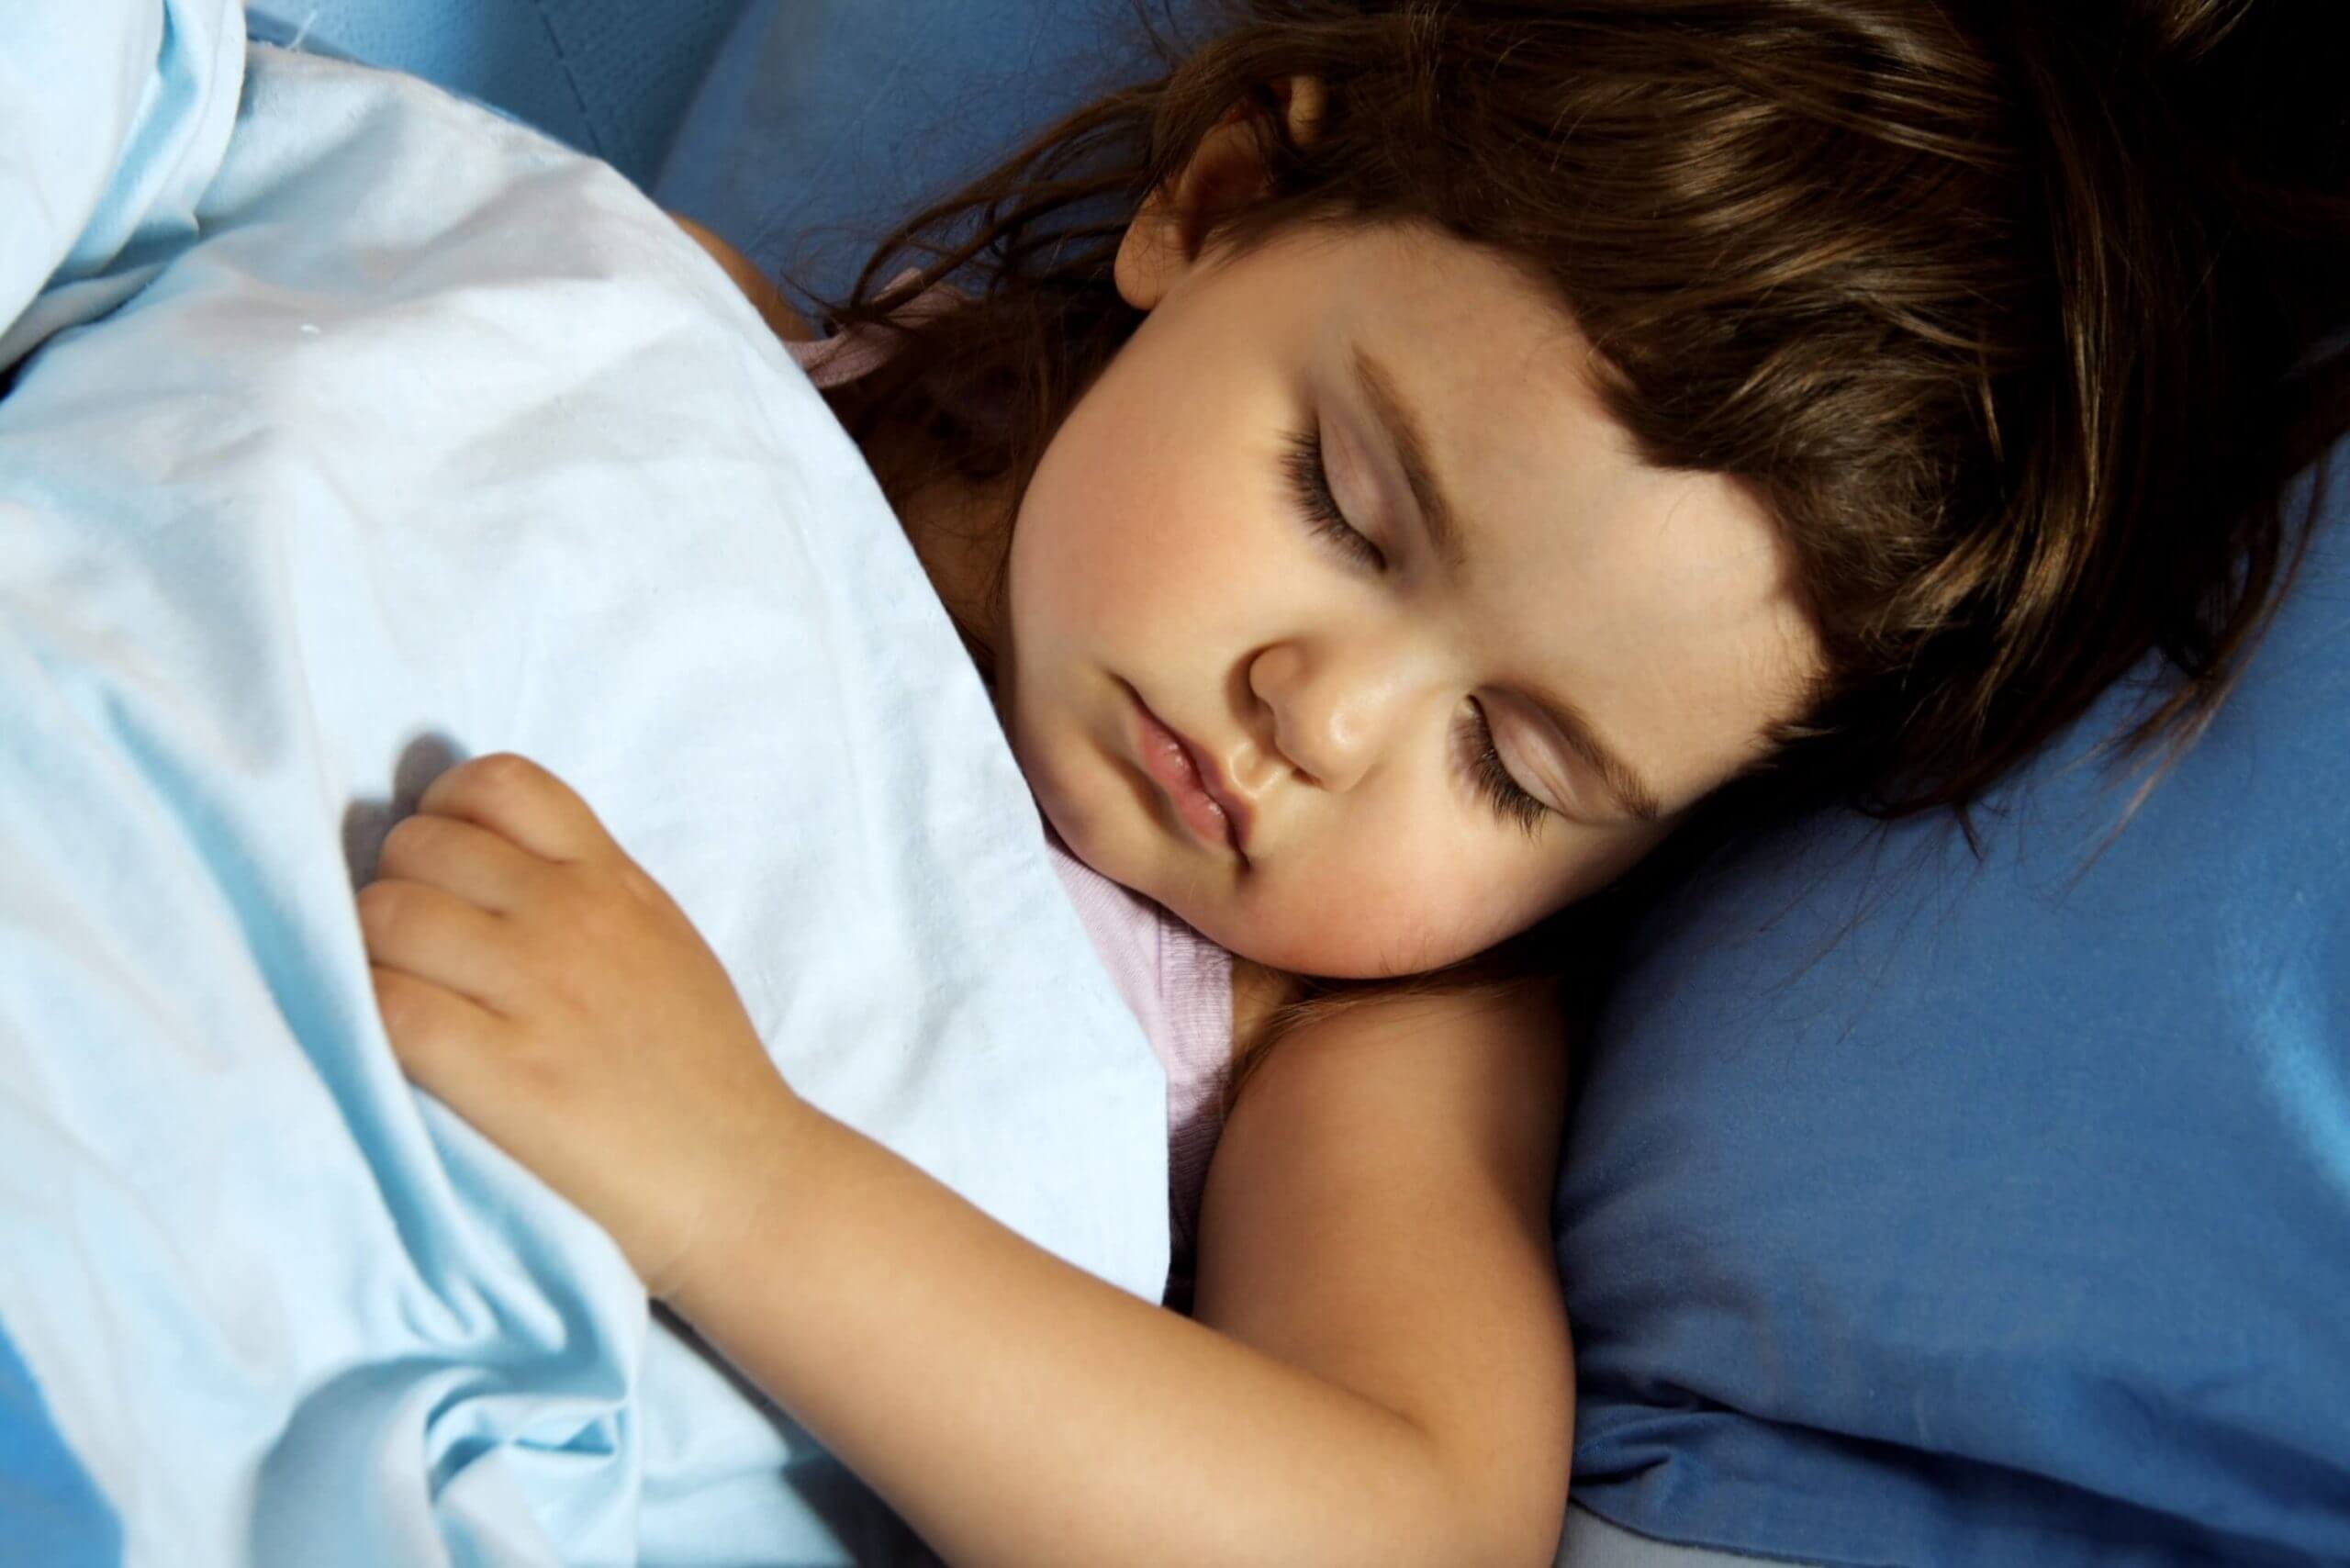 Т спящую мать. Сонная девочка 12 лет. Кровати для детей с эпилепсией.